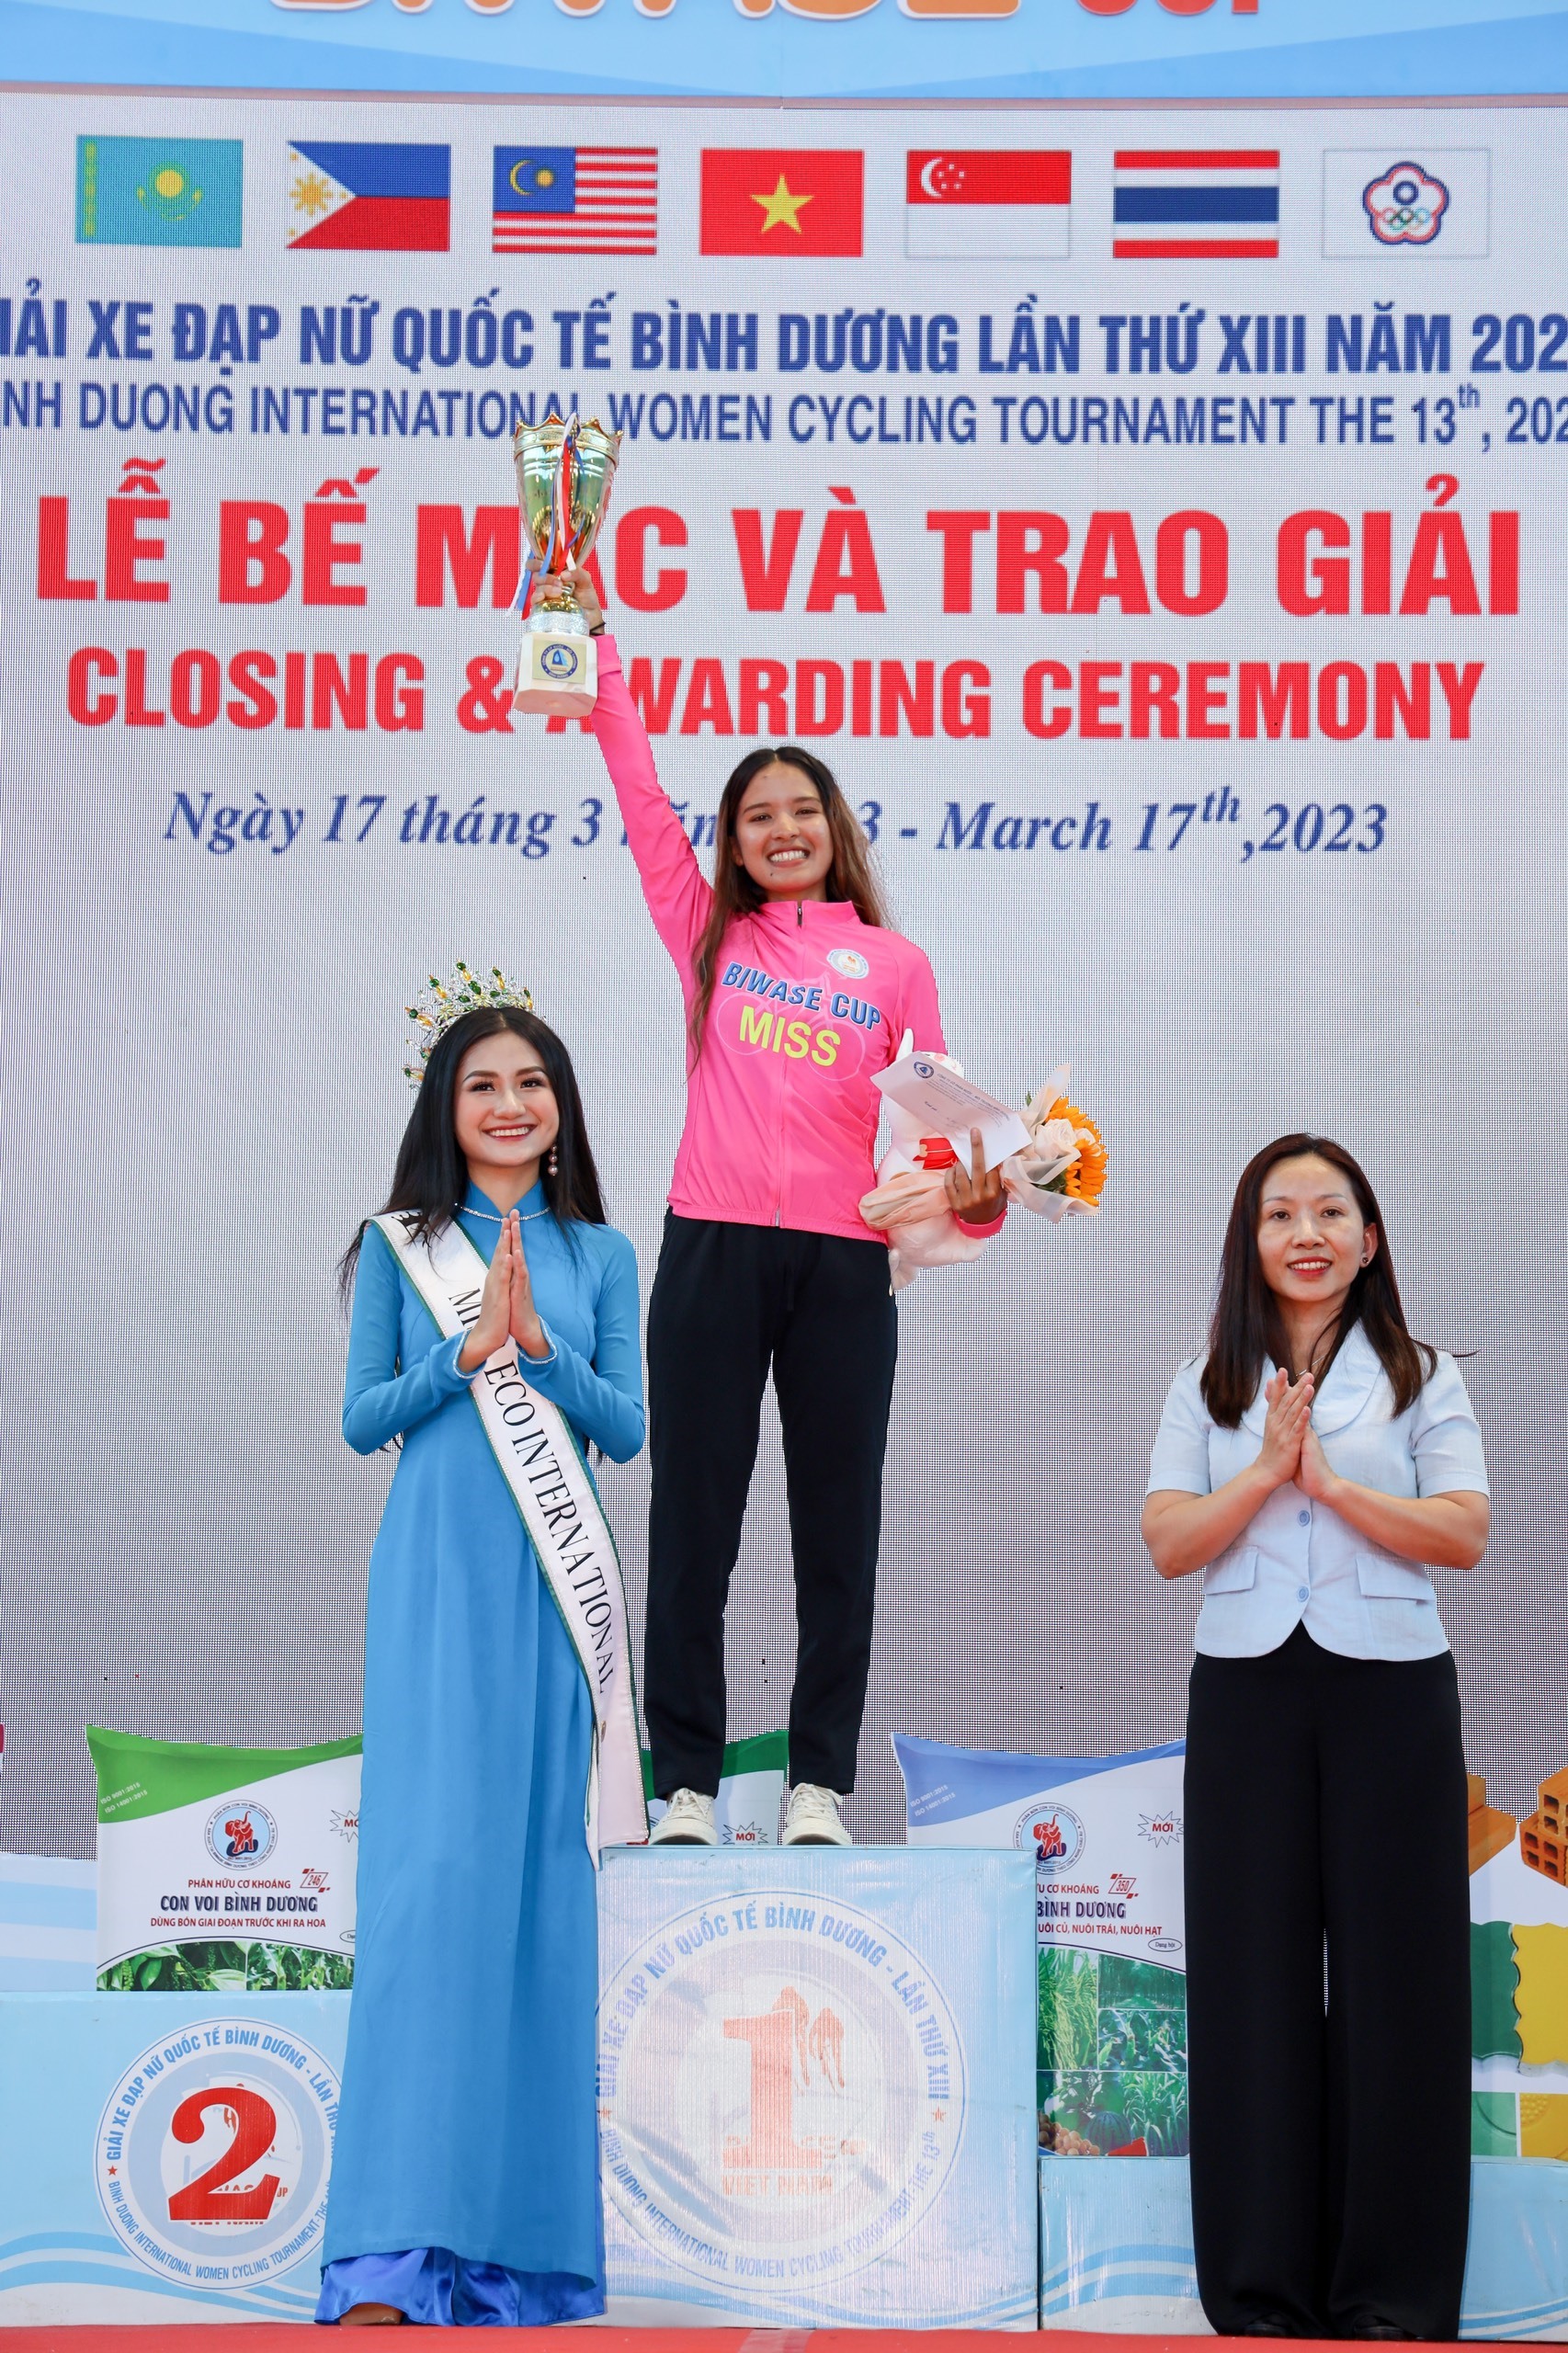 Bà Huỳnh Thị Thúy Phương -Phó Chủ tịch Hội Liên hiệp phụ nữ tỉnh và hoa hậu Nguyễn Thanh Hà trao thưởng cho VĐV đạt danh hiệu Miss Biwase Cup. Ảnh: Hoàng Anh